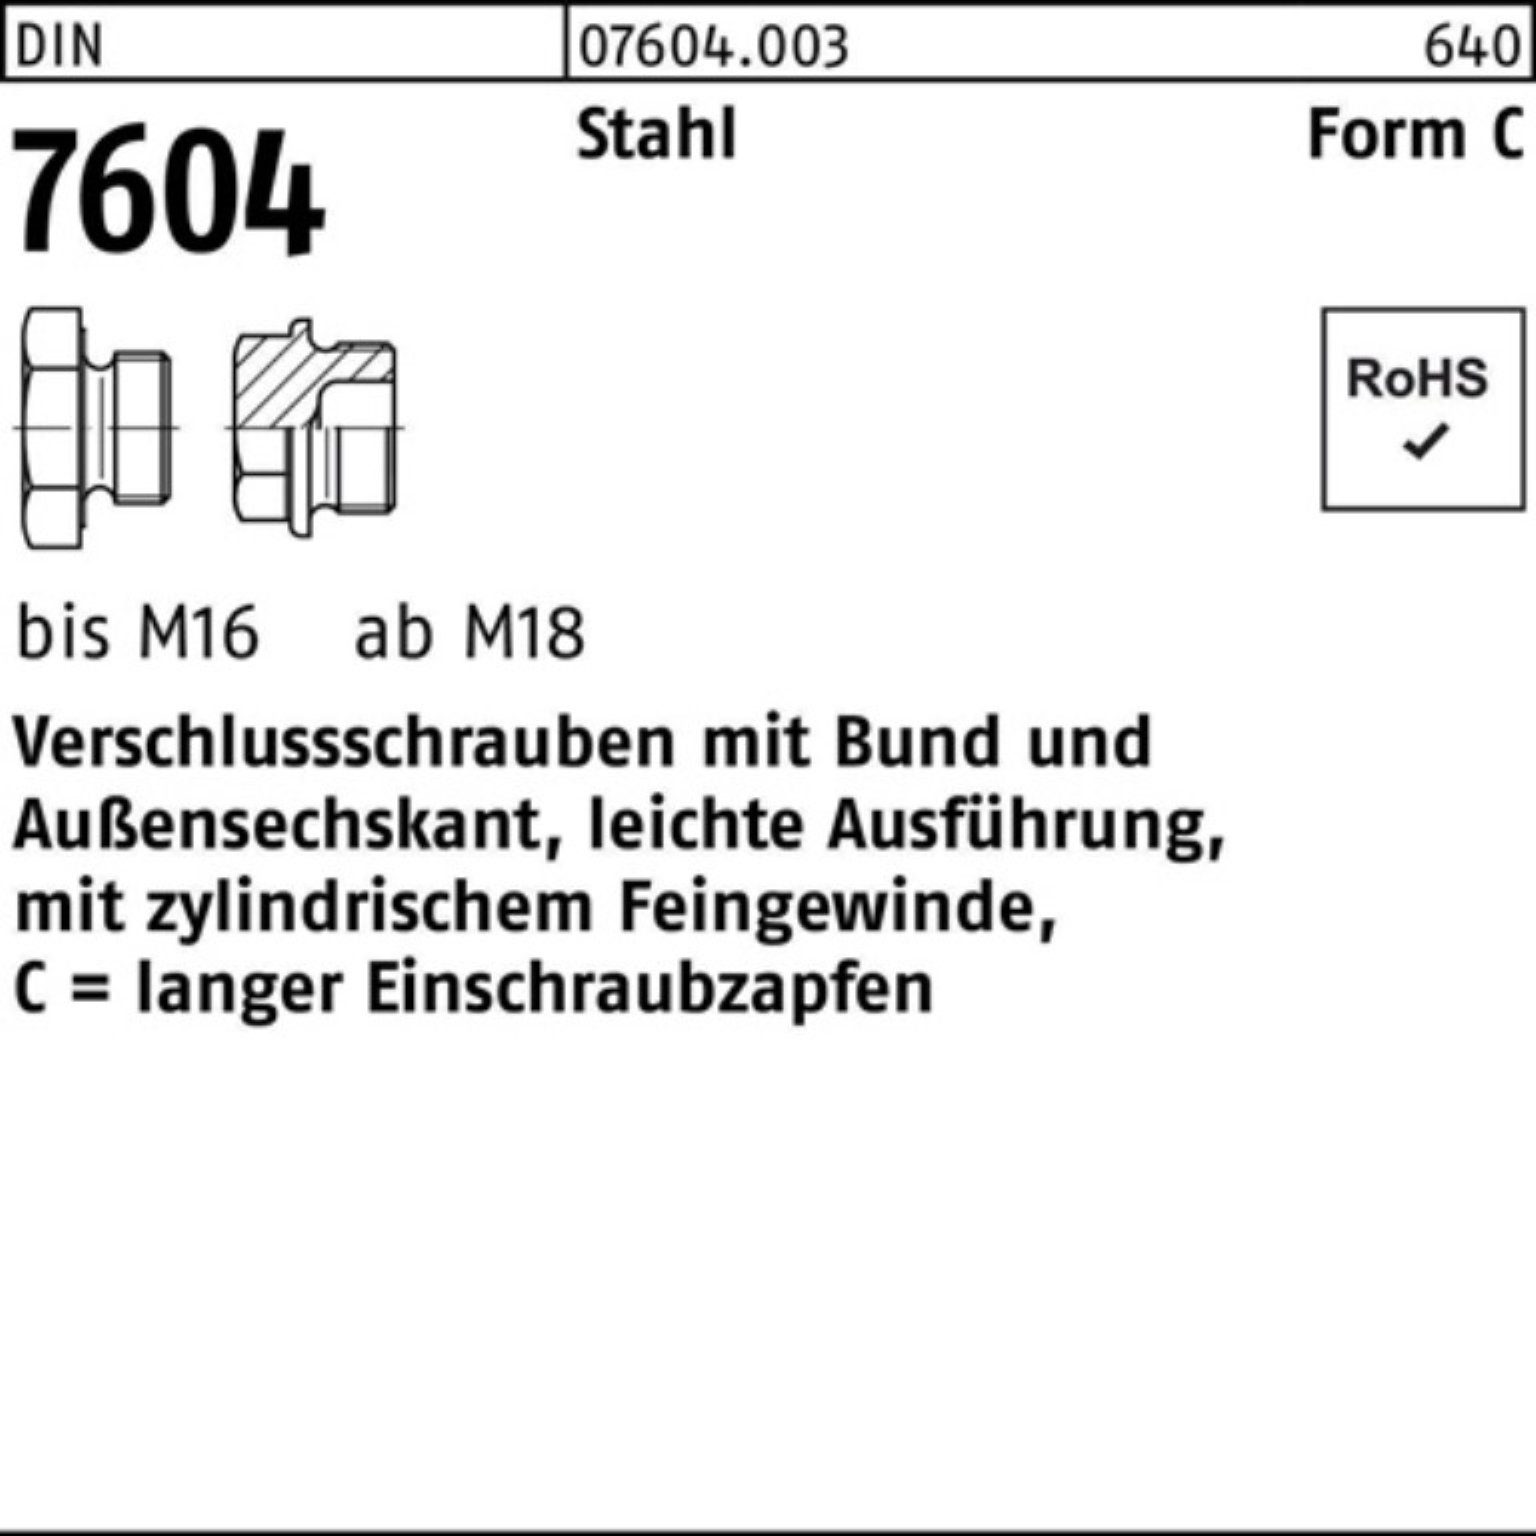 Reyher Schraube 100er Pack Verschlußschraube CM 45x 7604 1,5 DIN Stahl Stück 1 Bund